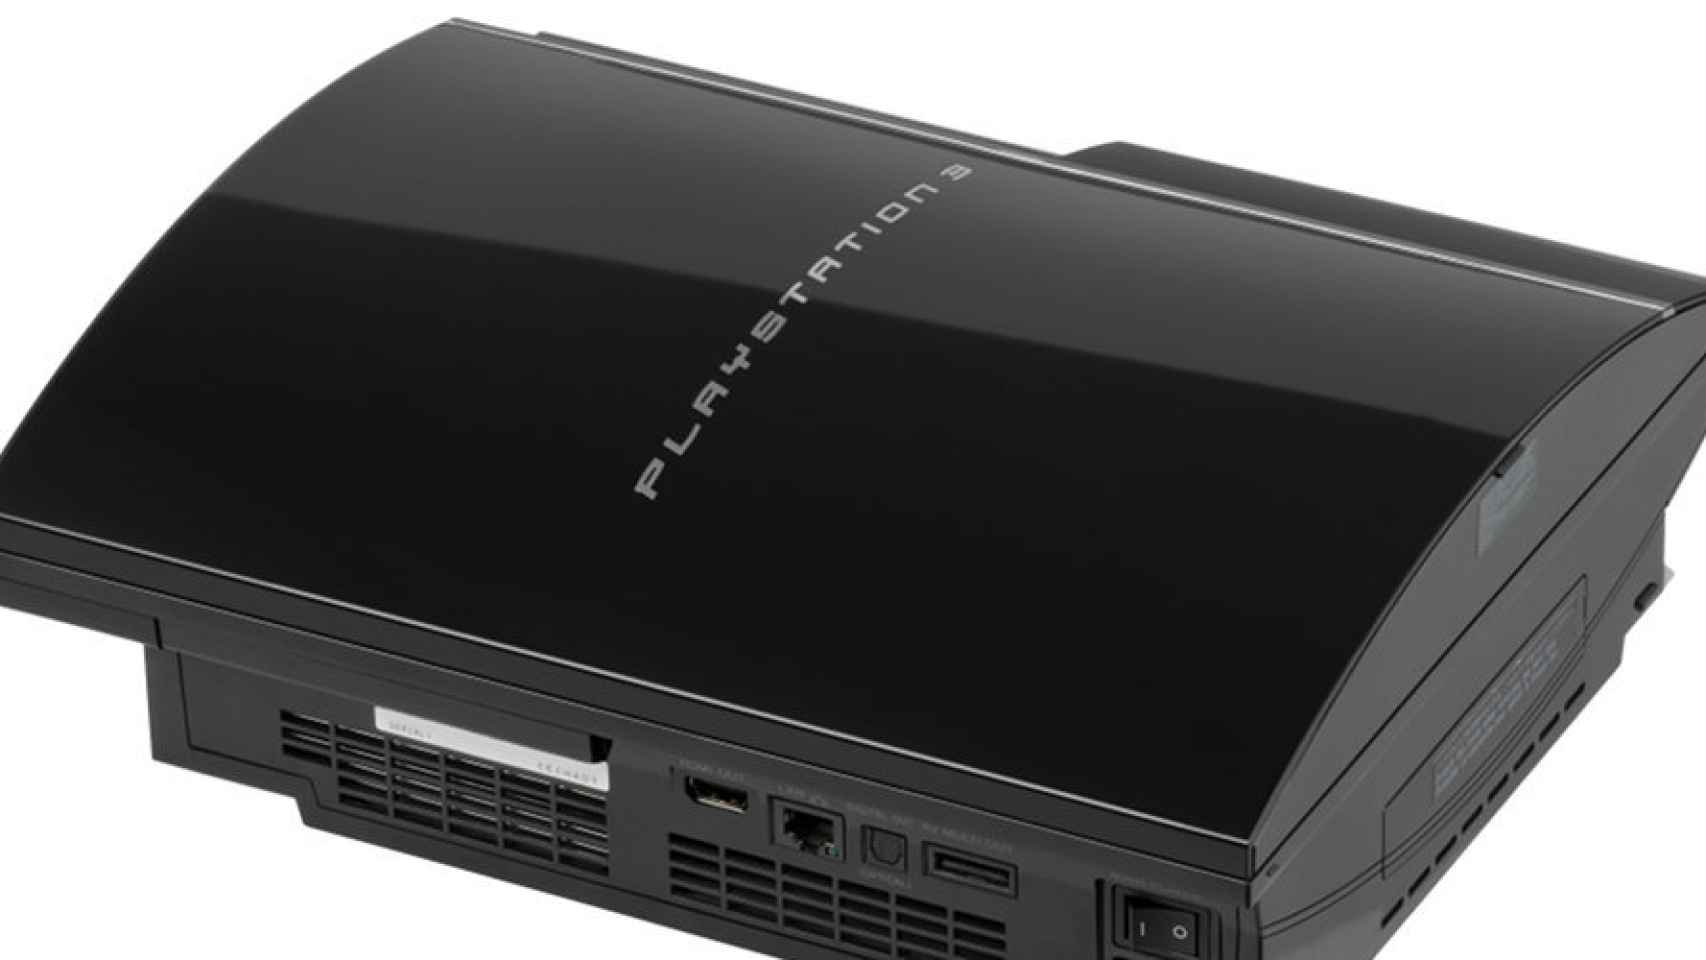 La PlayStation 3 fue la primera consola conectada de serie de Sony